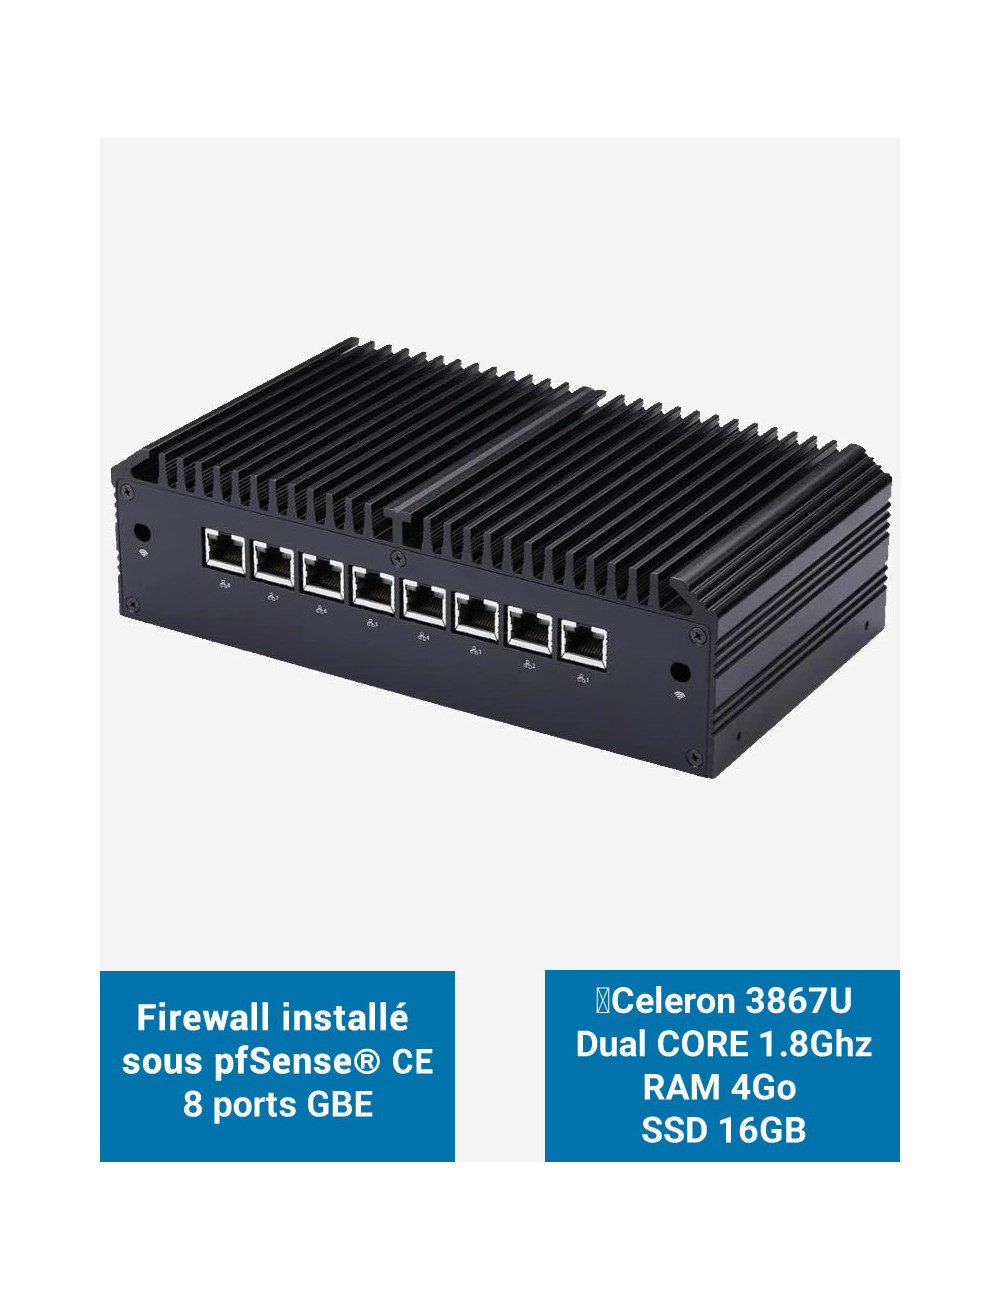 Firewall Q8x Celeron 3867U 8 ports GbE 4GB 16GB